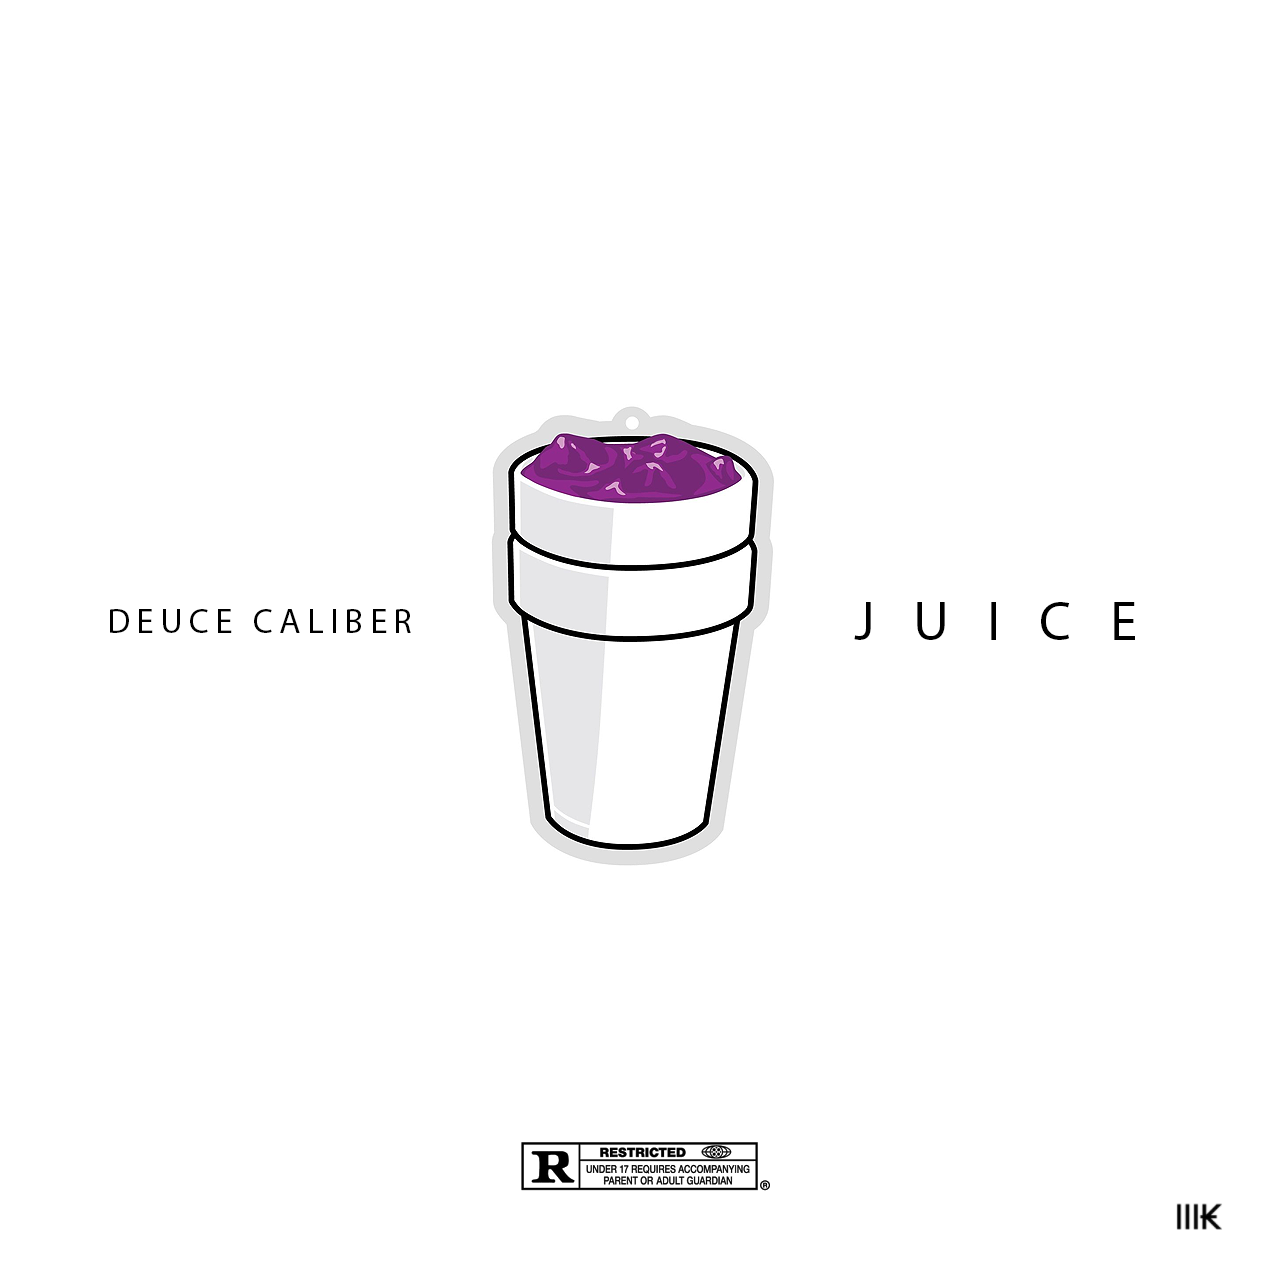 Deuce Caliber Juice Artwork